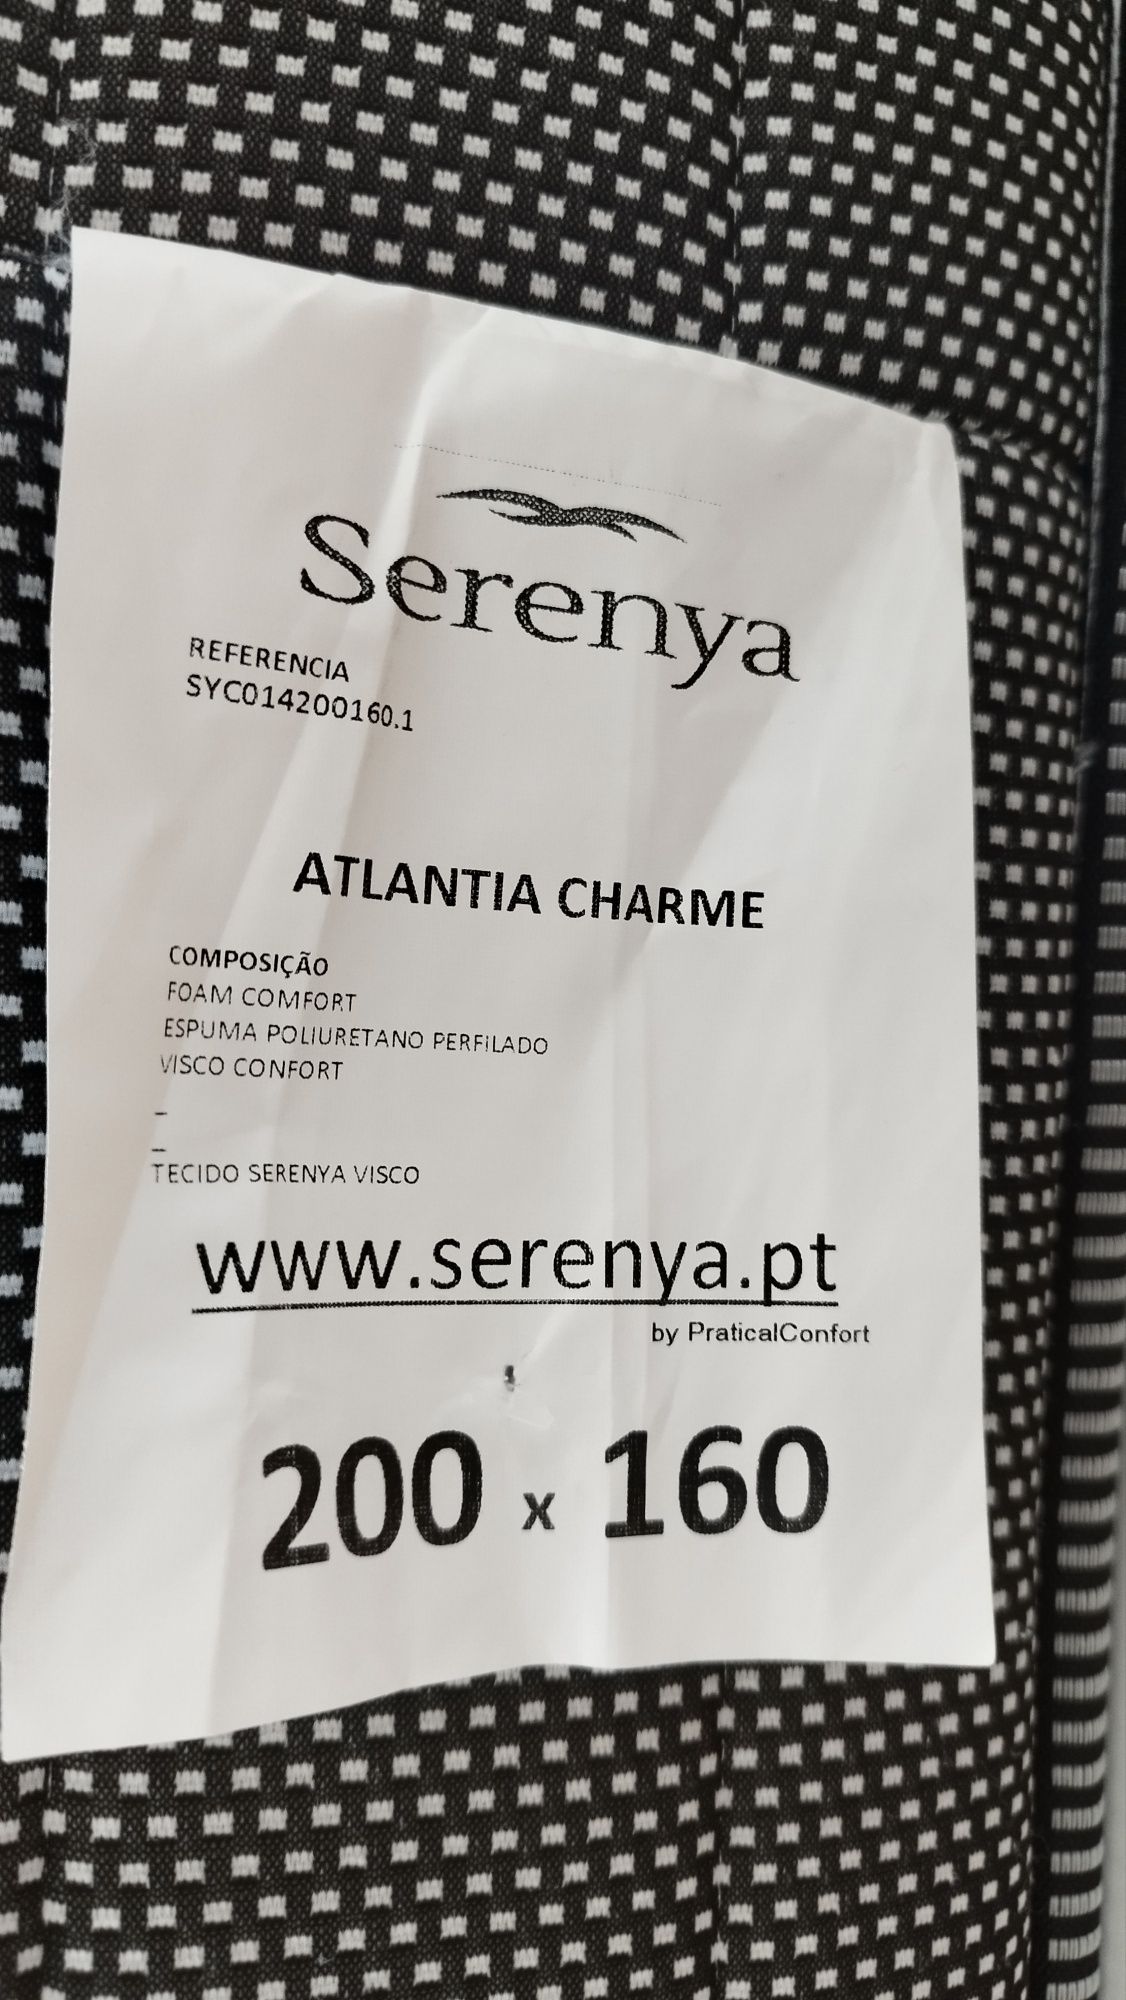 Colchão Visco Serenya Atlantia Charme 160x200